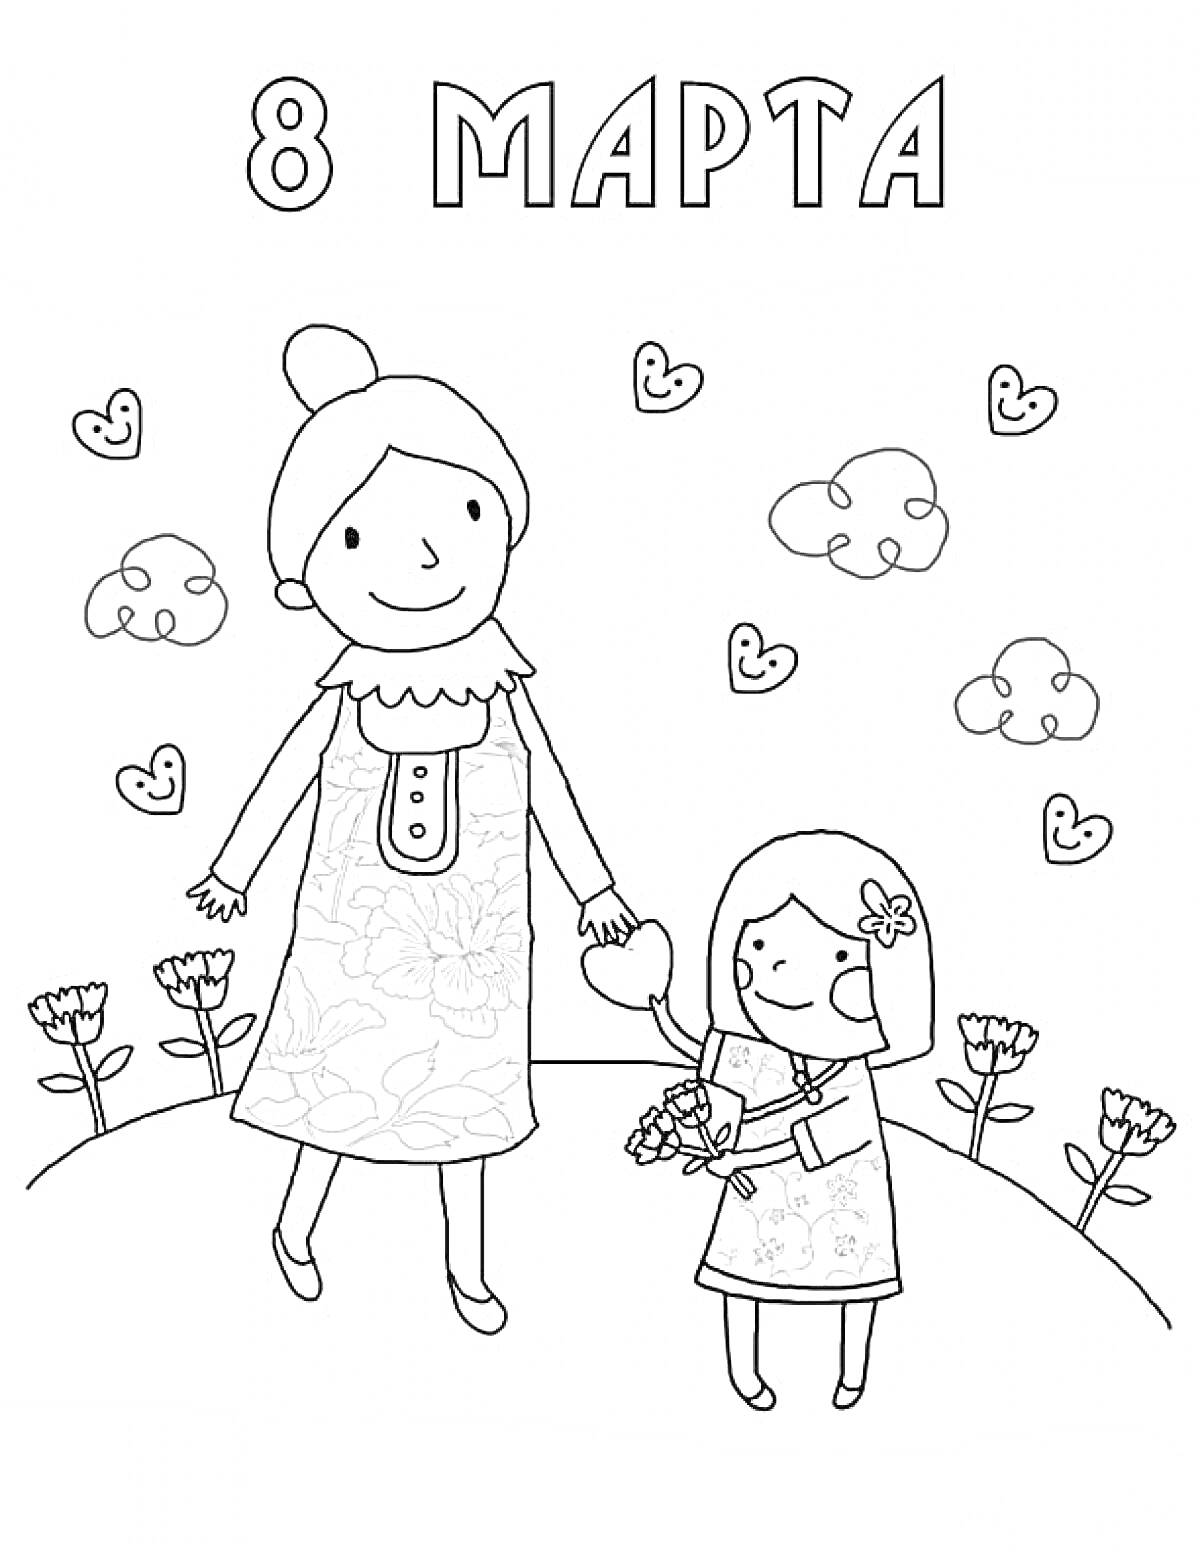 Мама и дочка, держащиеся за руки, на фоне с облаками, сердечками и цветами. Надпись 